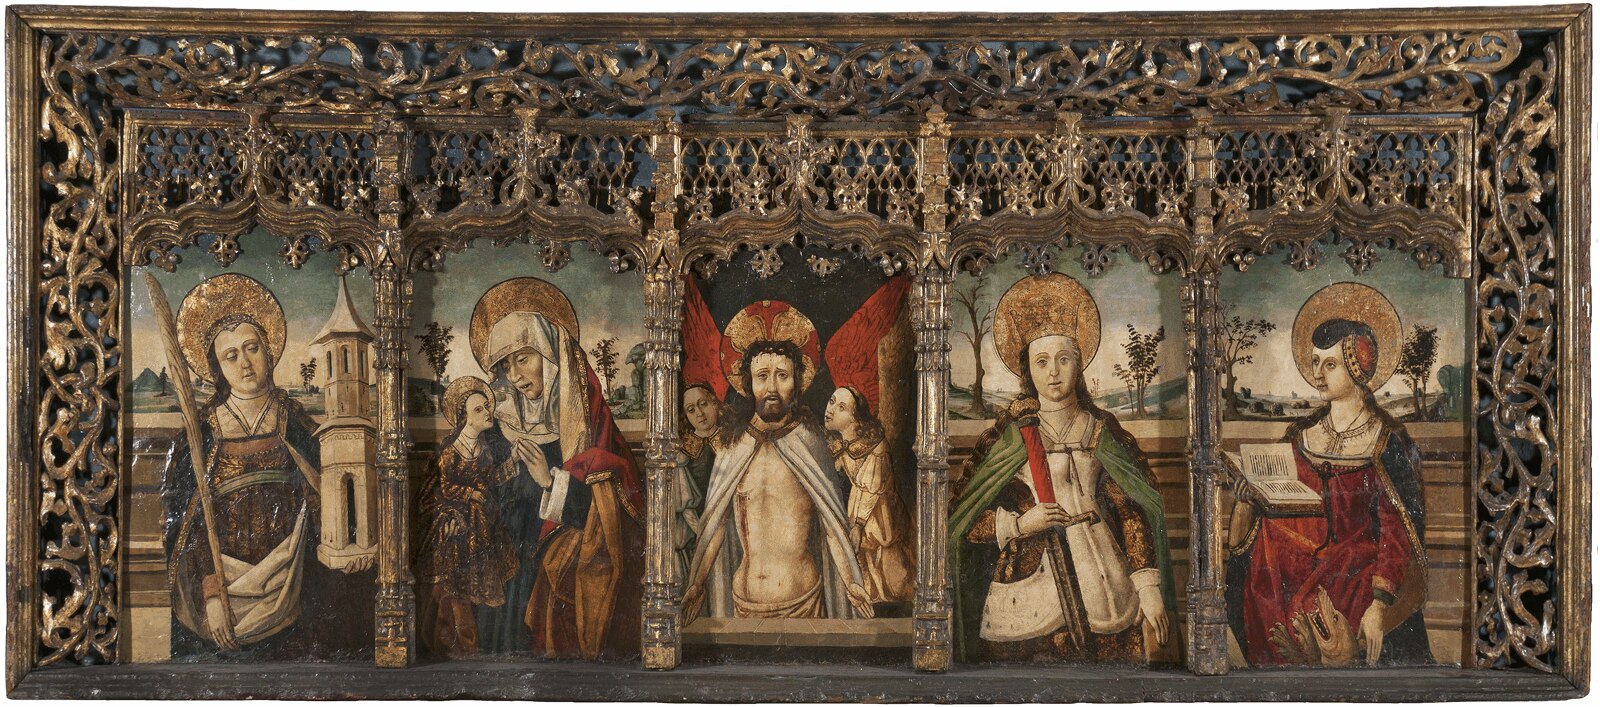 cristo-de-la-piedad-con-santas-Colección-toledo-cardenal-cisneros-exposicion-retablo-pintura-bbva